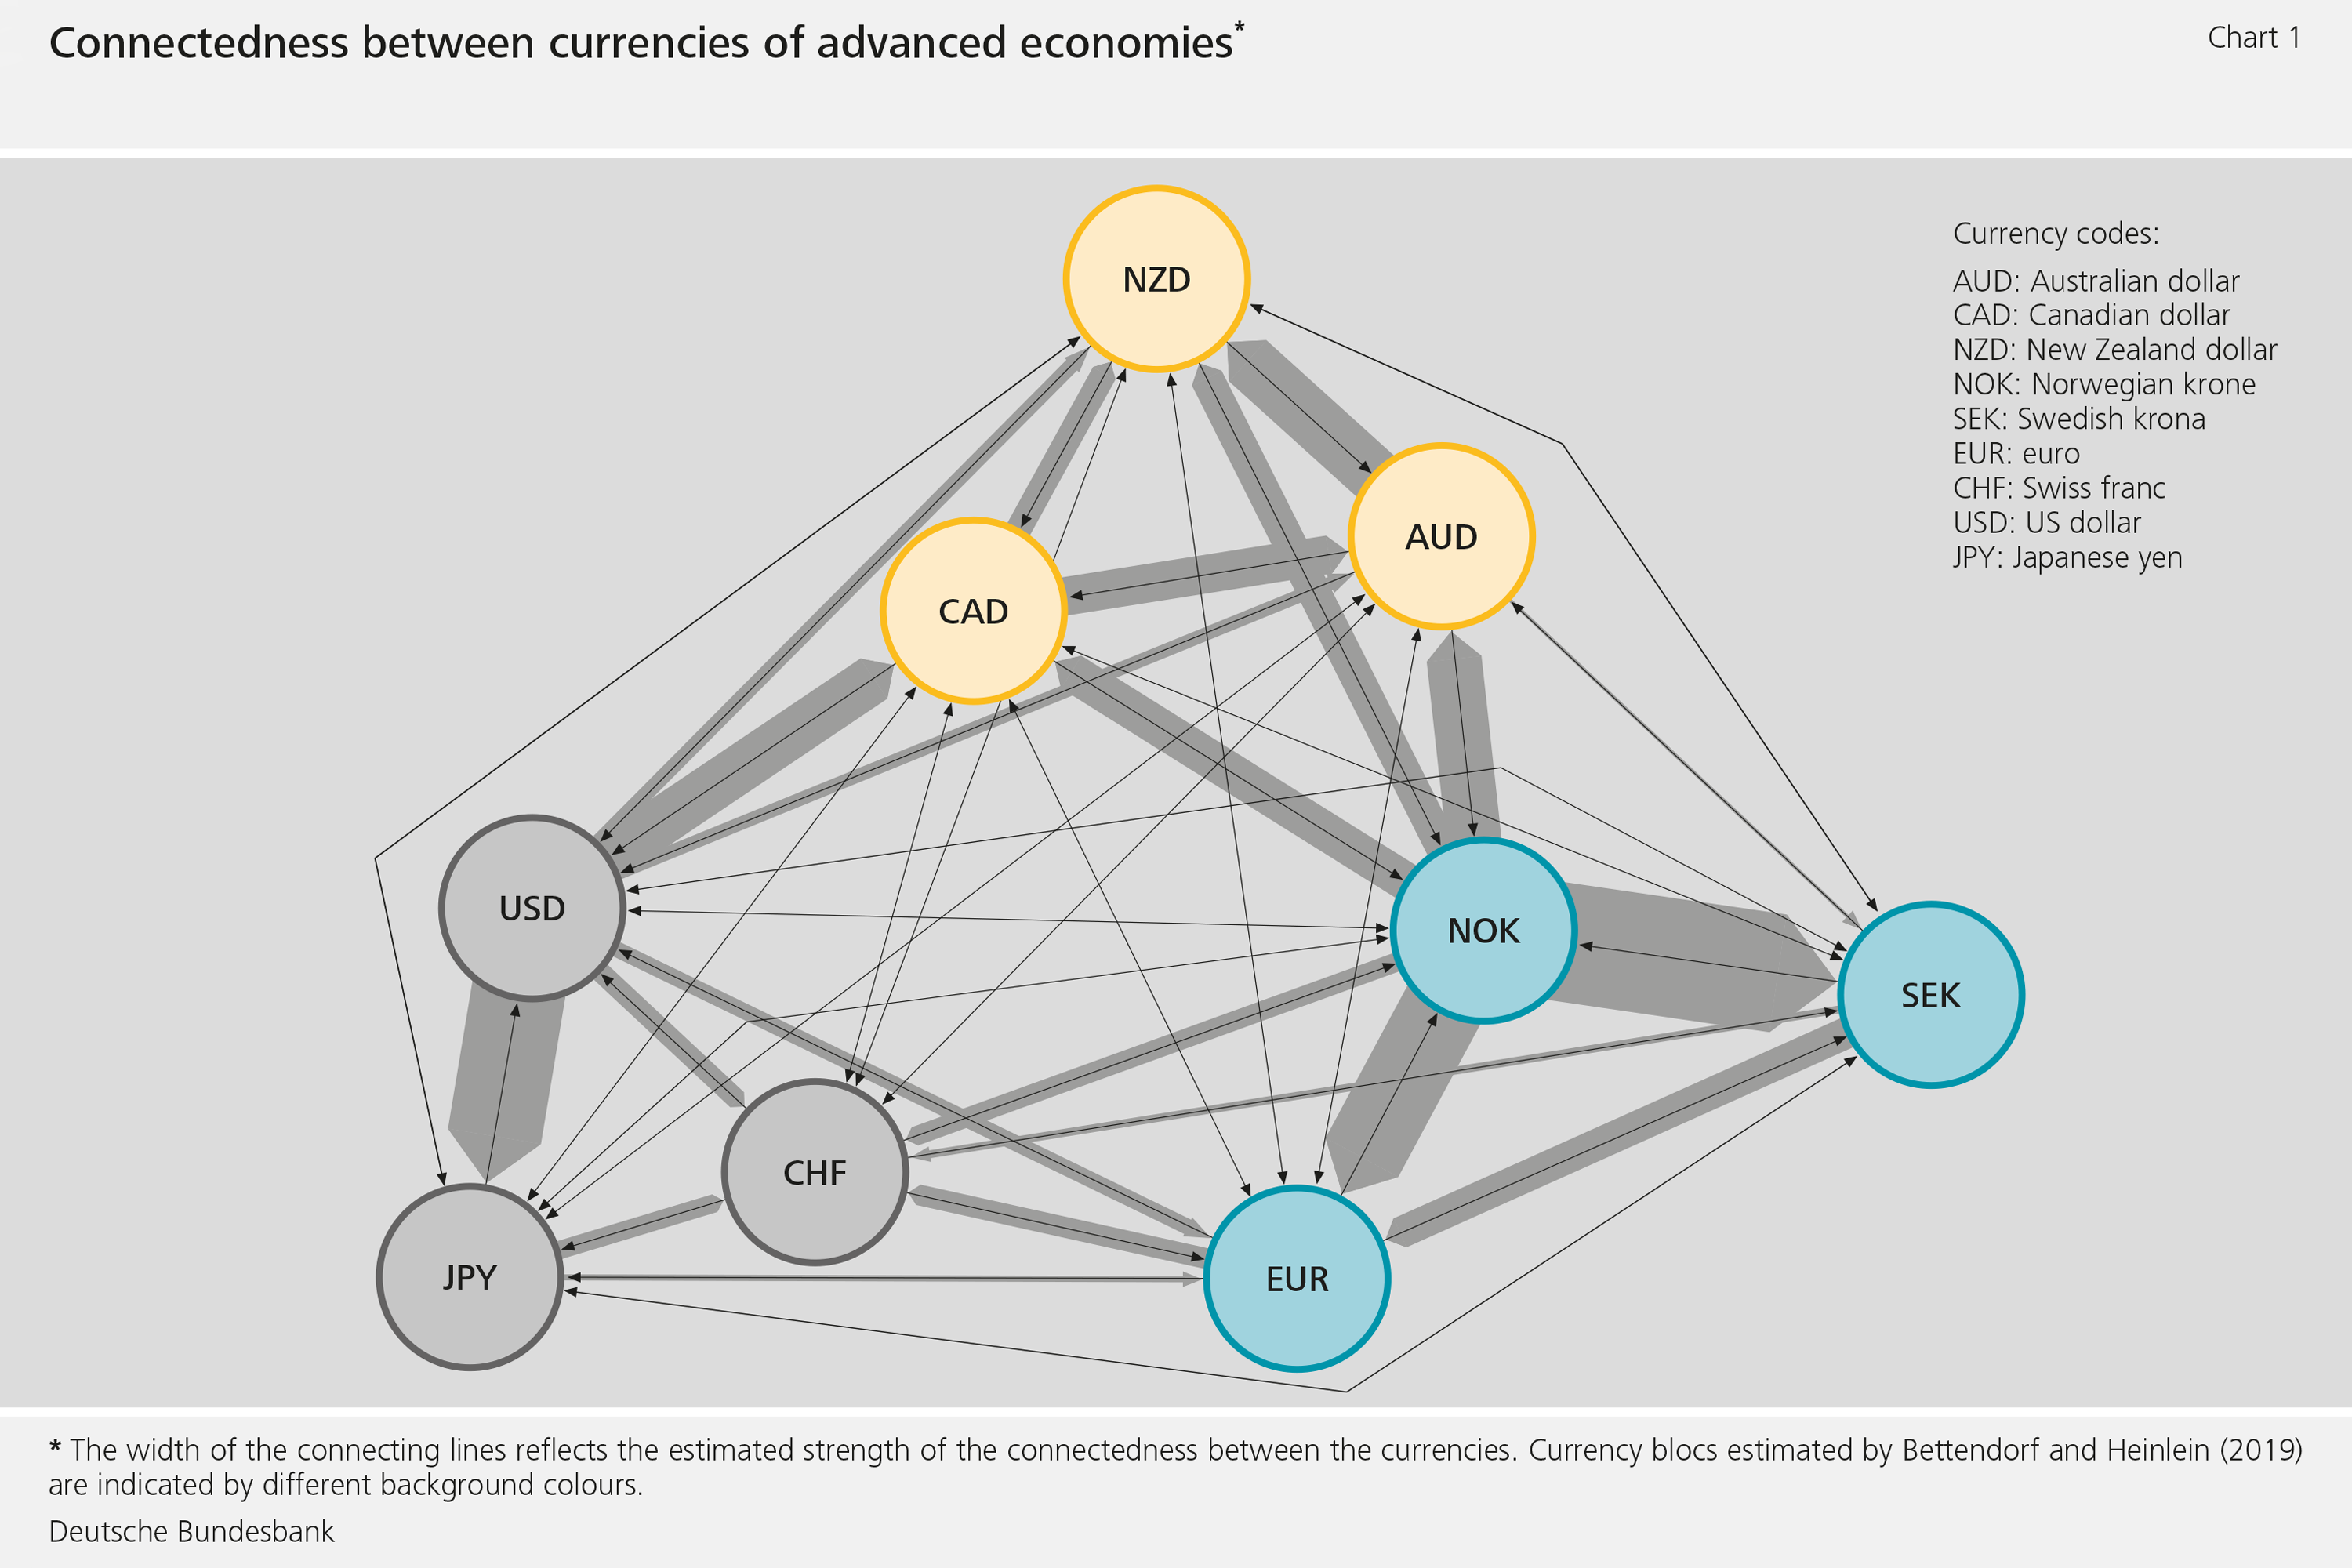 Figure 1: Connectedness between currencies of advanced economies